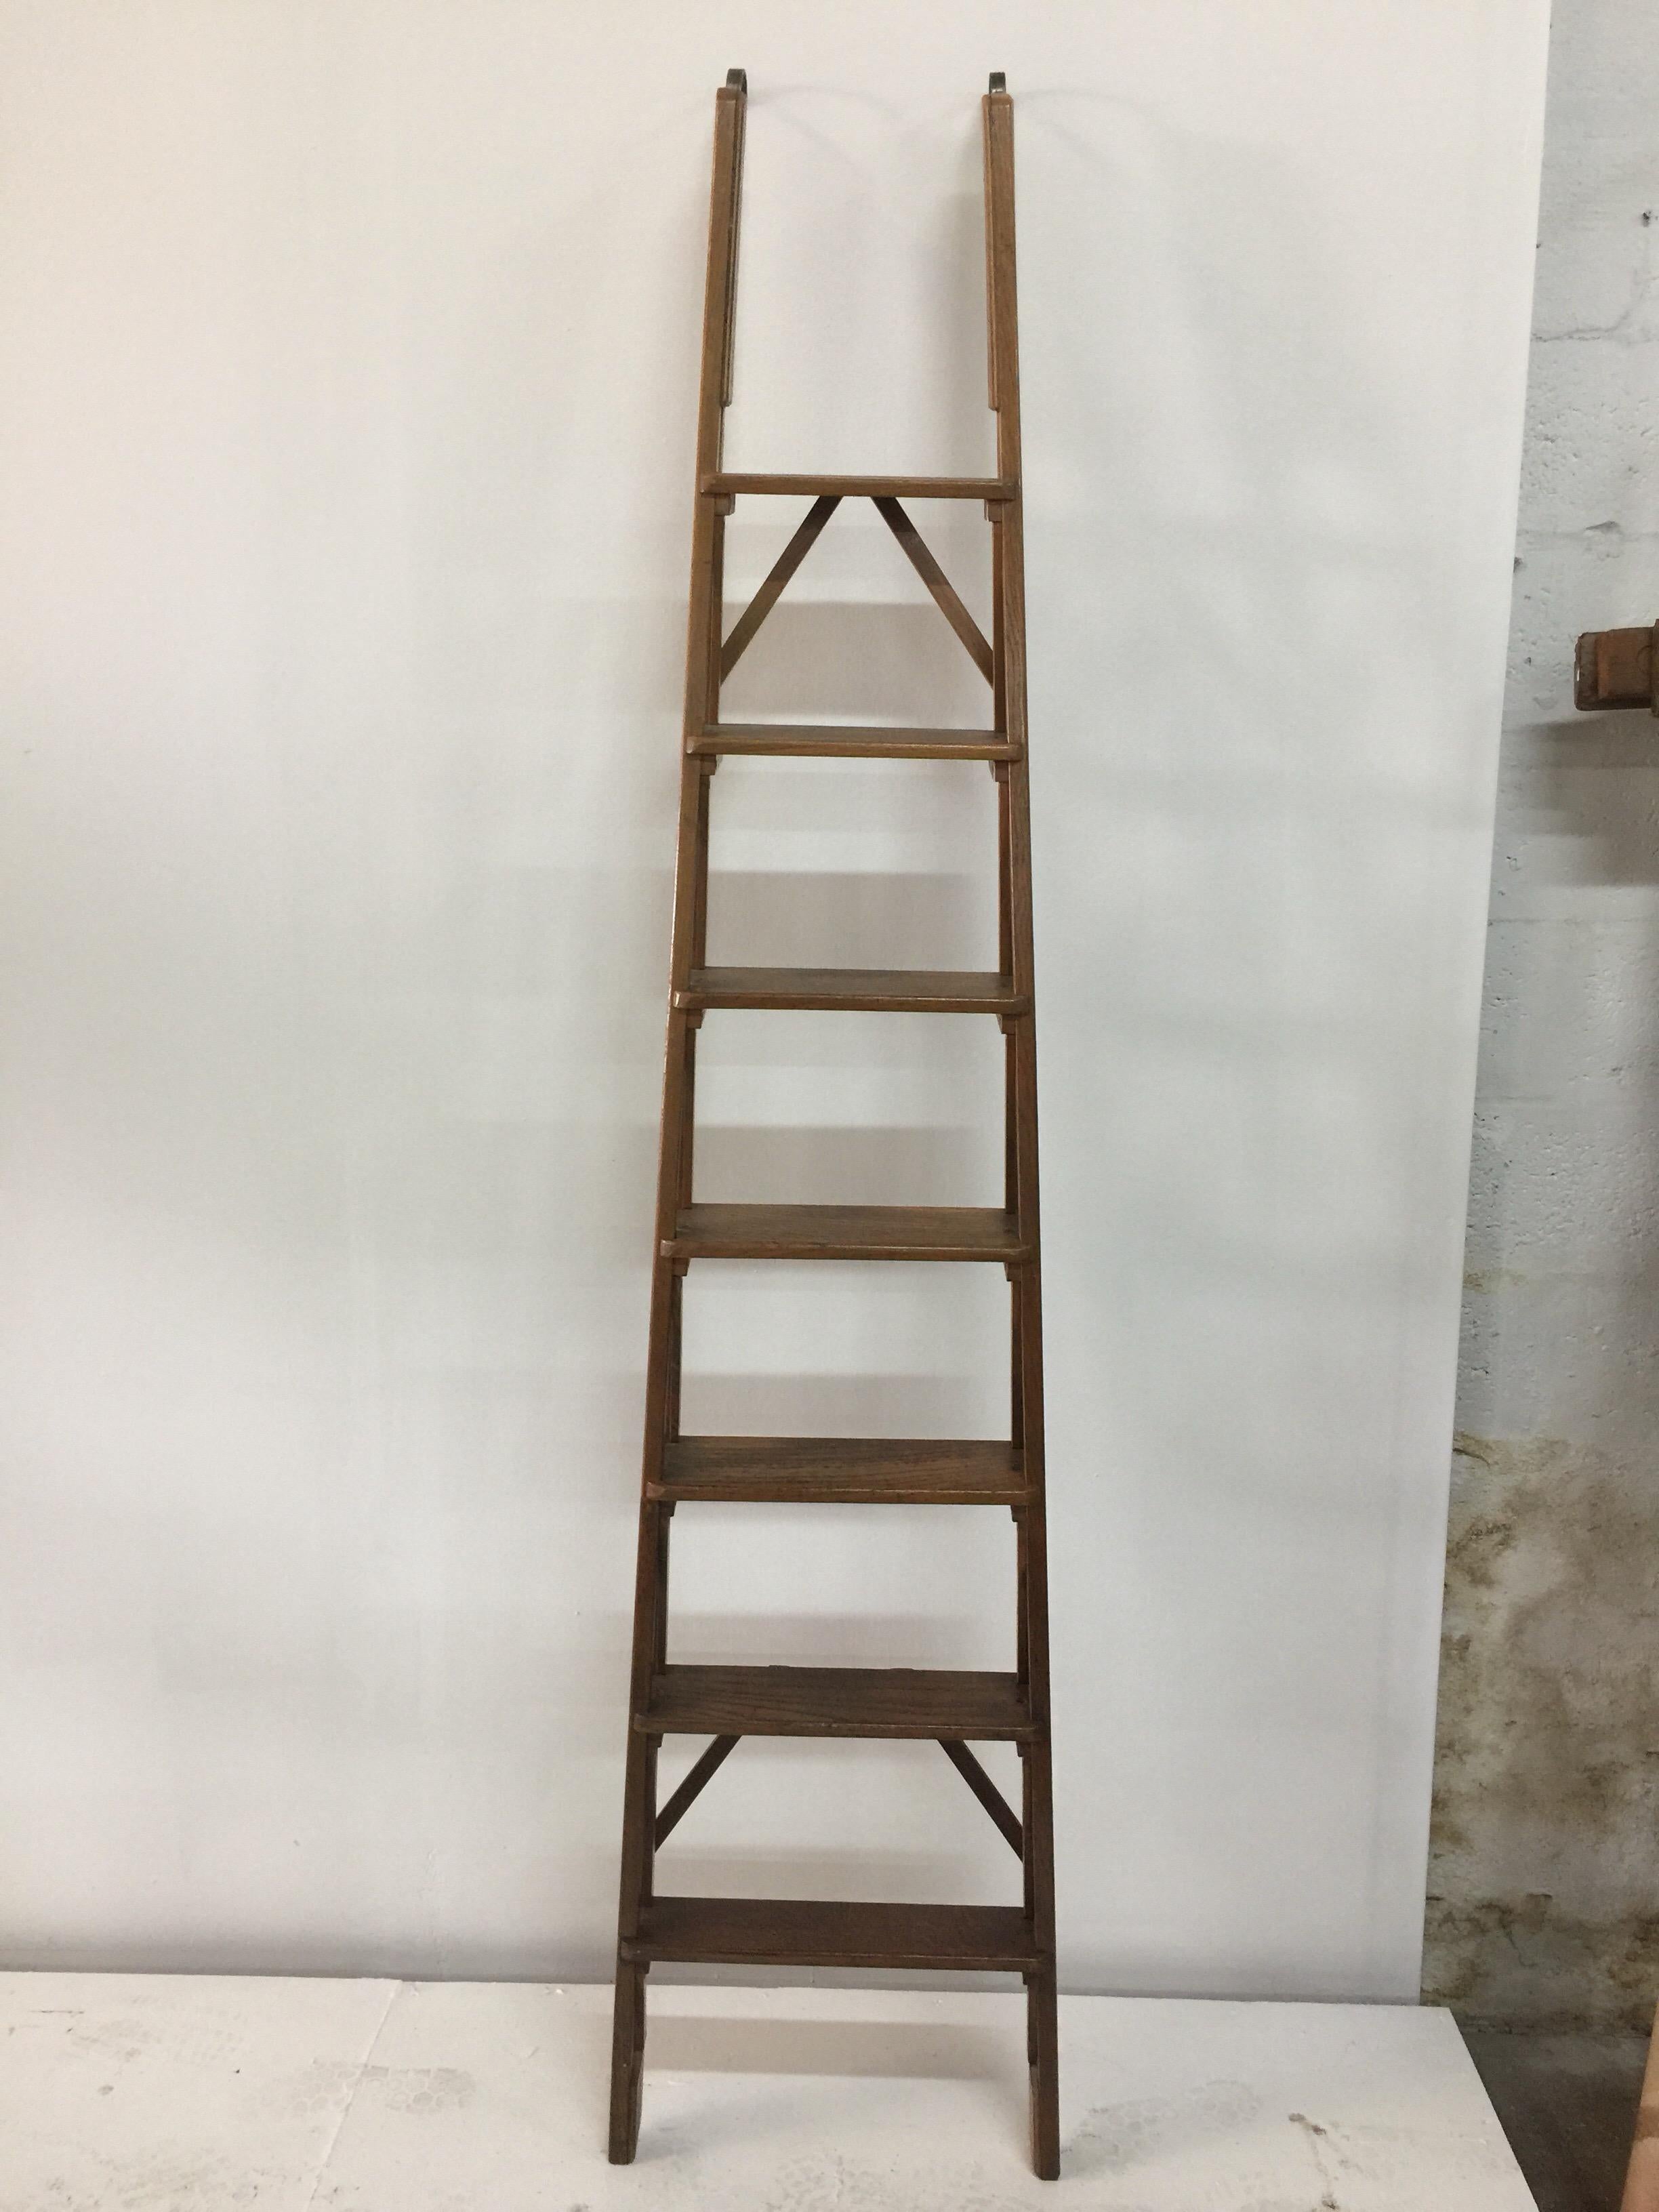 franco ladder